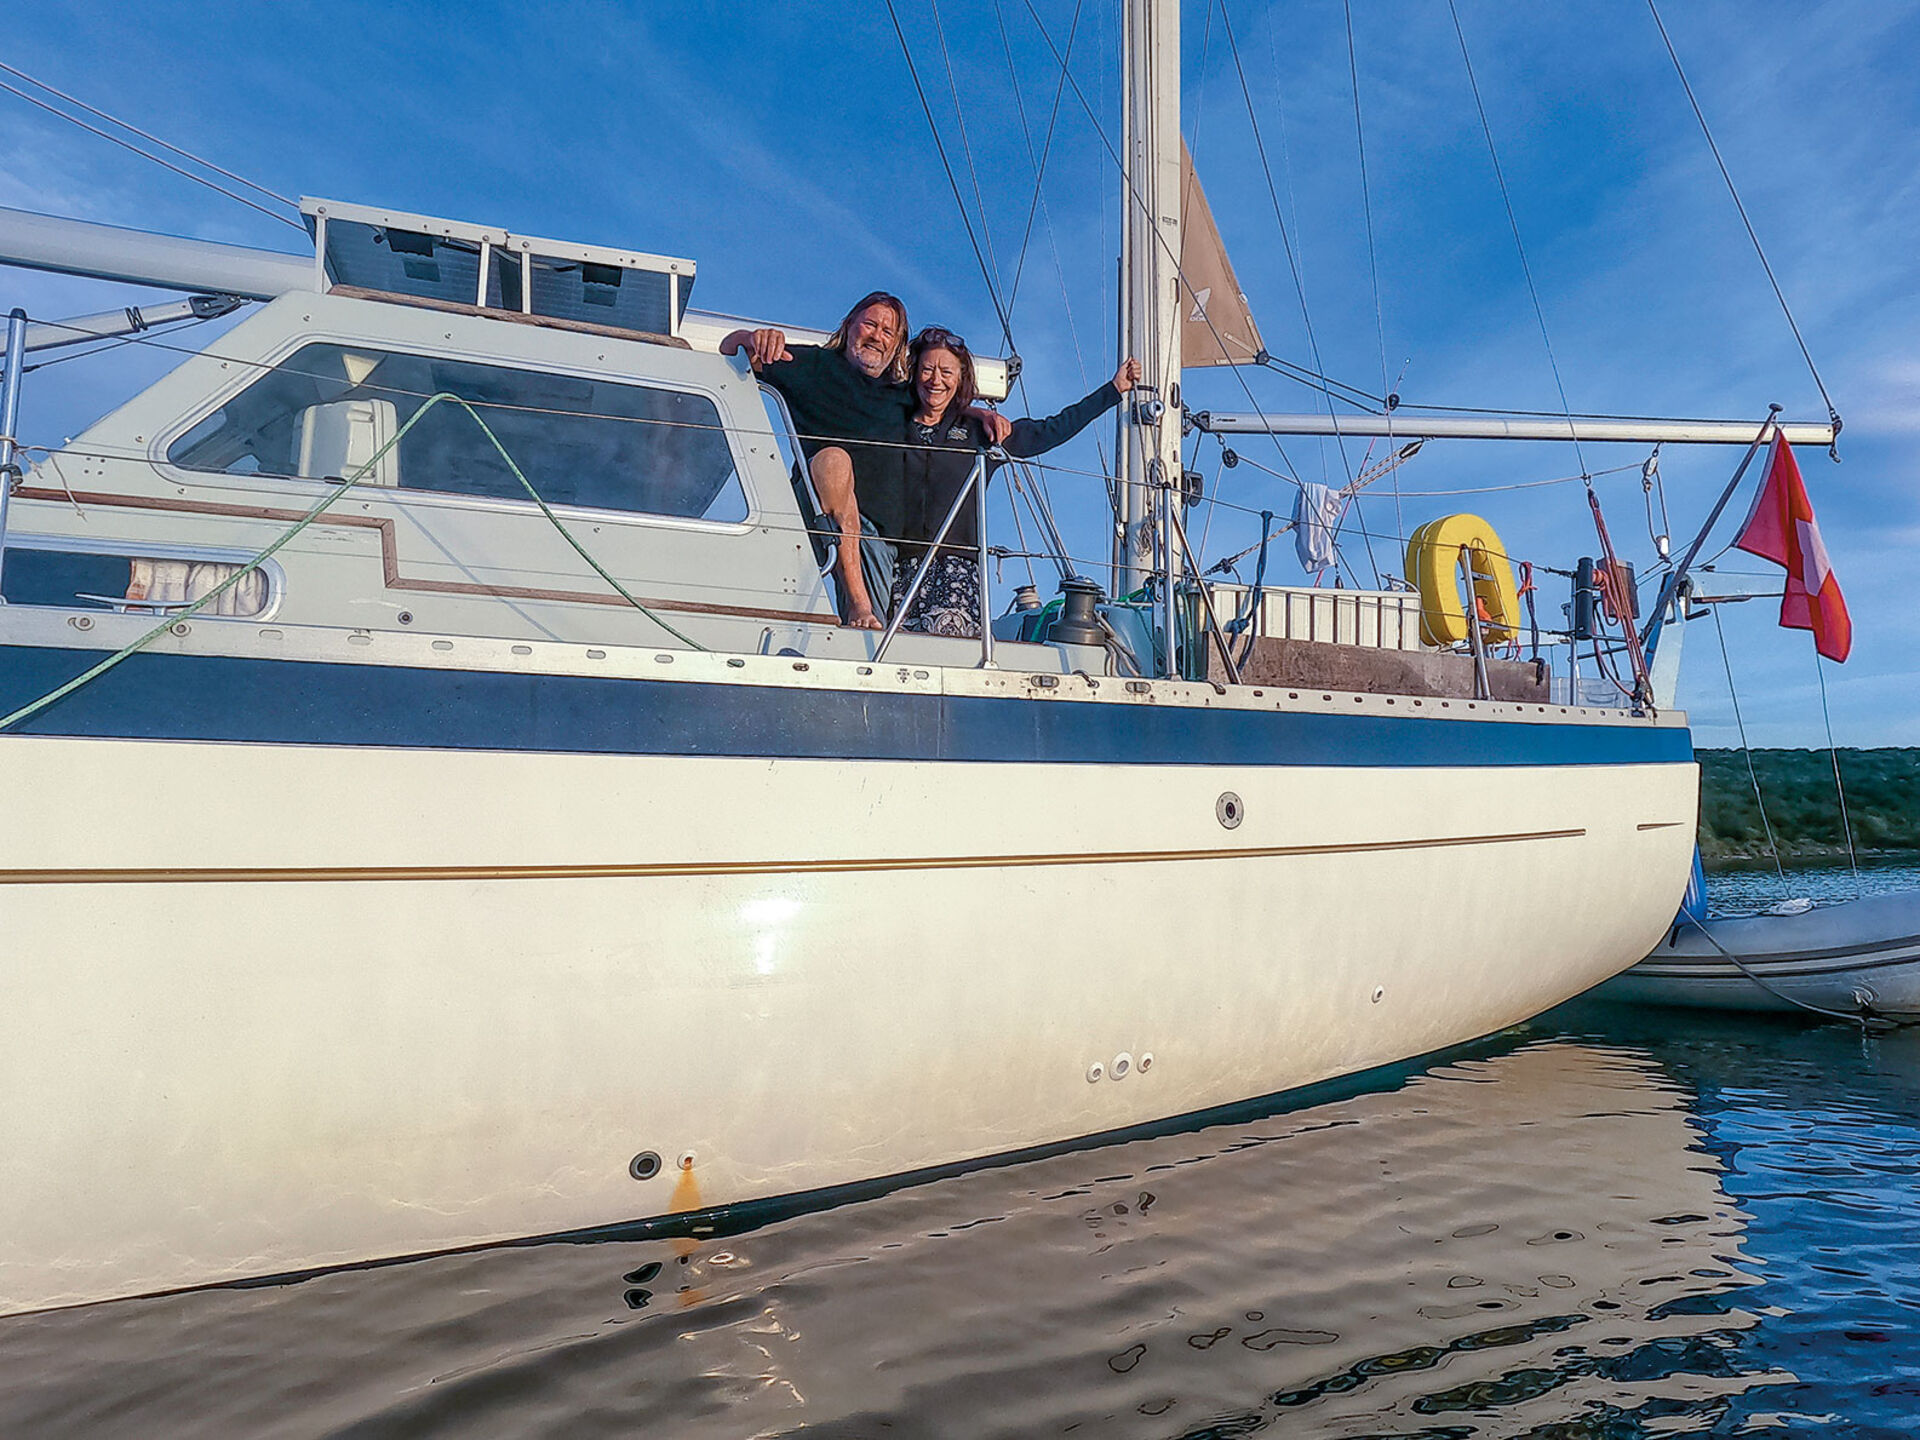  Schon die zweite Saison leben Tinu und Judith auf dem Schiff. Den Winter verbringen sie in einem warmen Segelrevier und erledigen Arbeiten am Boot. Zwischendurch reisen sie auch mal zurück in die Schweiz, um Familie und Freunde zu besuchen.   